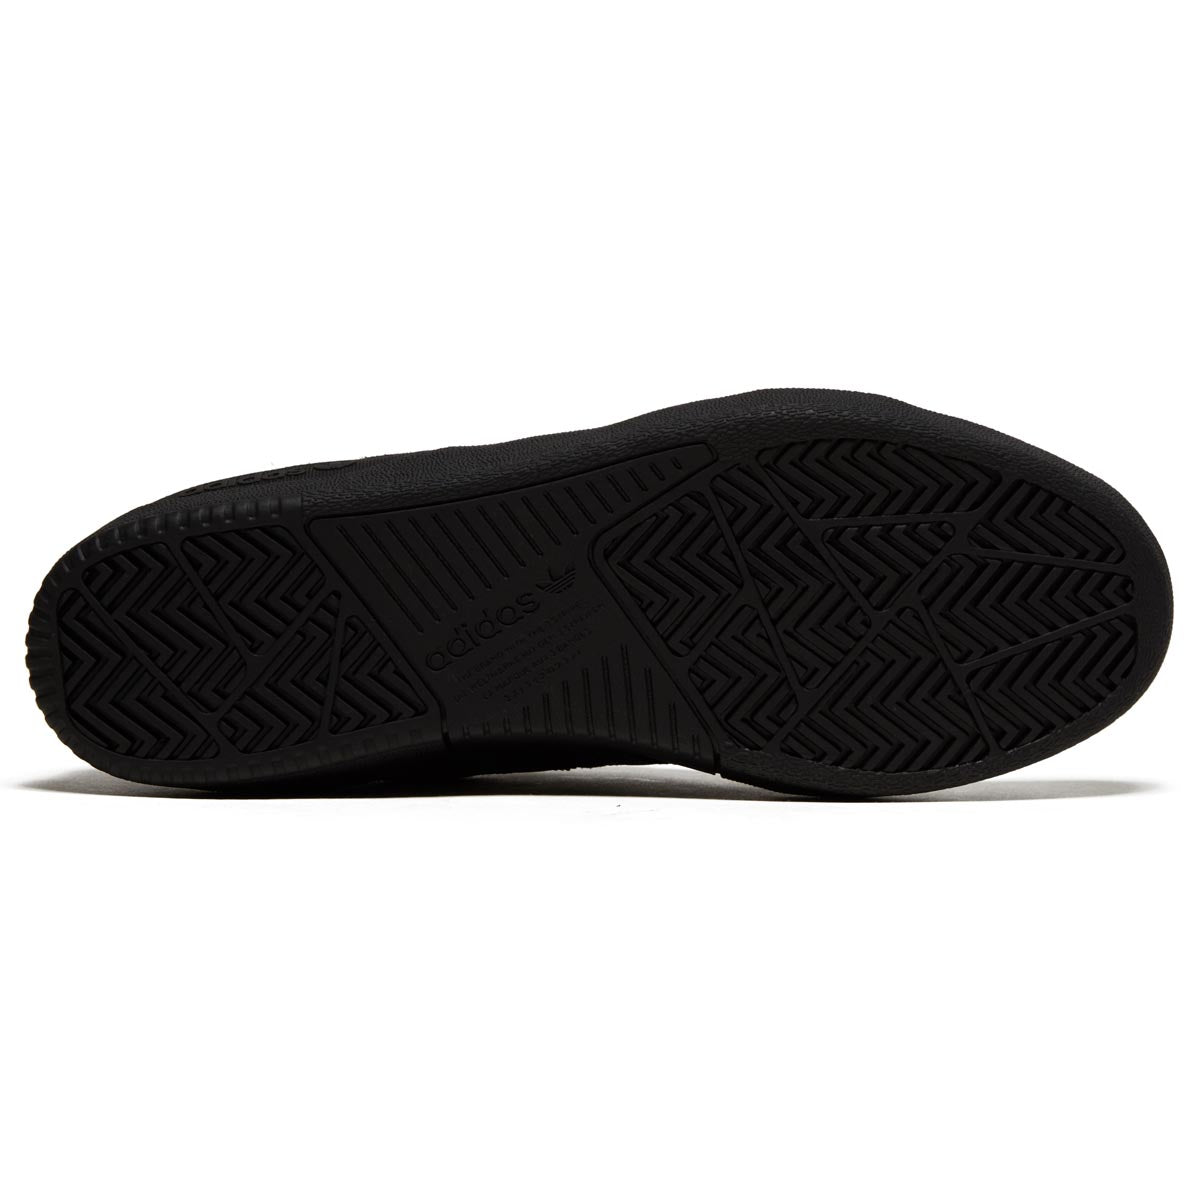 Adidas Tyshawn Low Shoes - Black/White/Gold Meltallic image 4